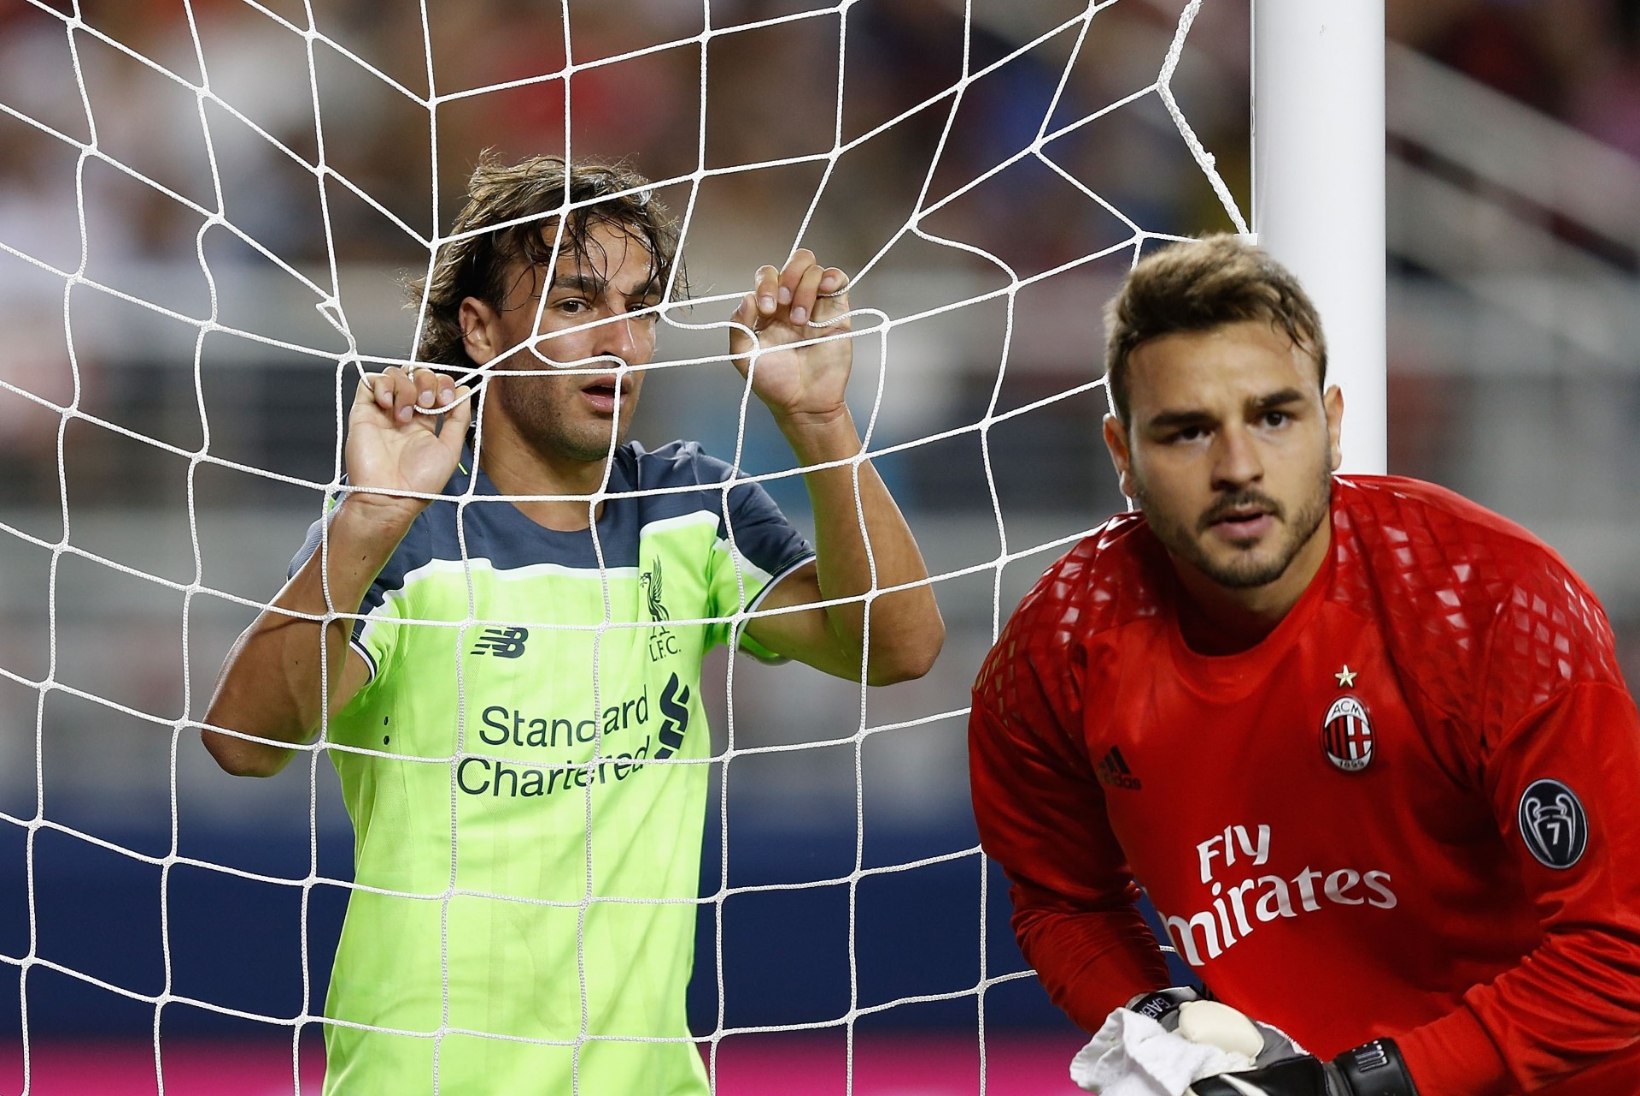 KUULUJUTUVESKI | Liverpooli põlualune pääseb klubist minema, Madridi Real ihaldab slovakki